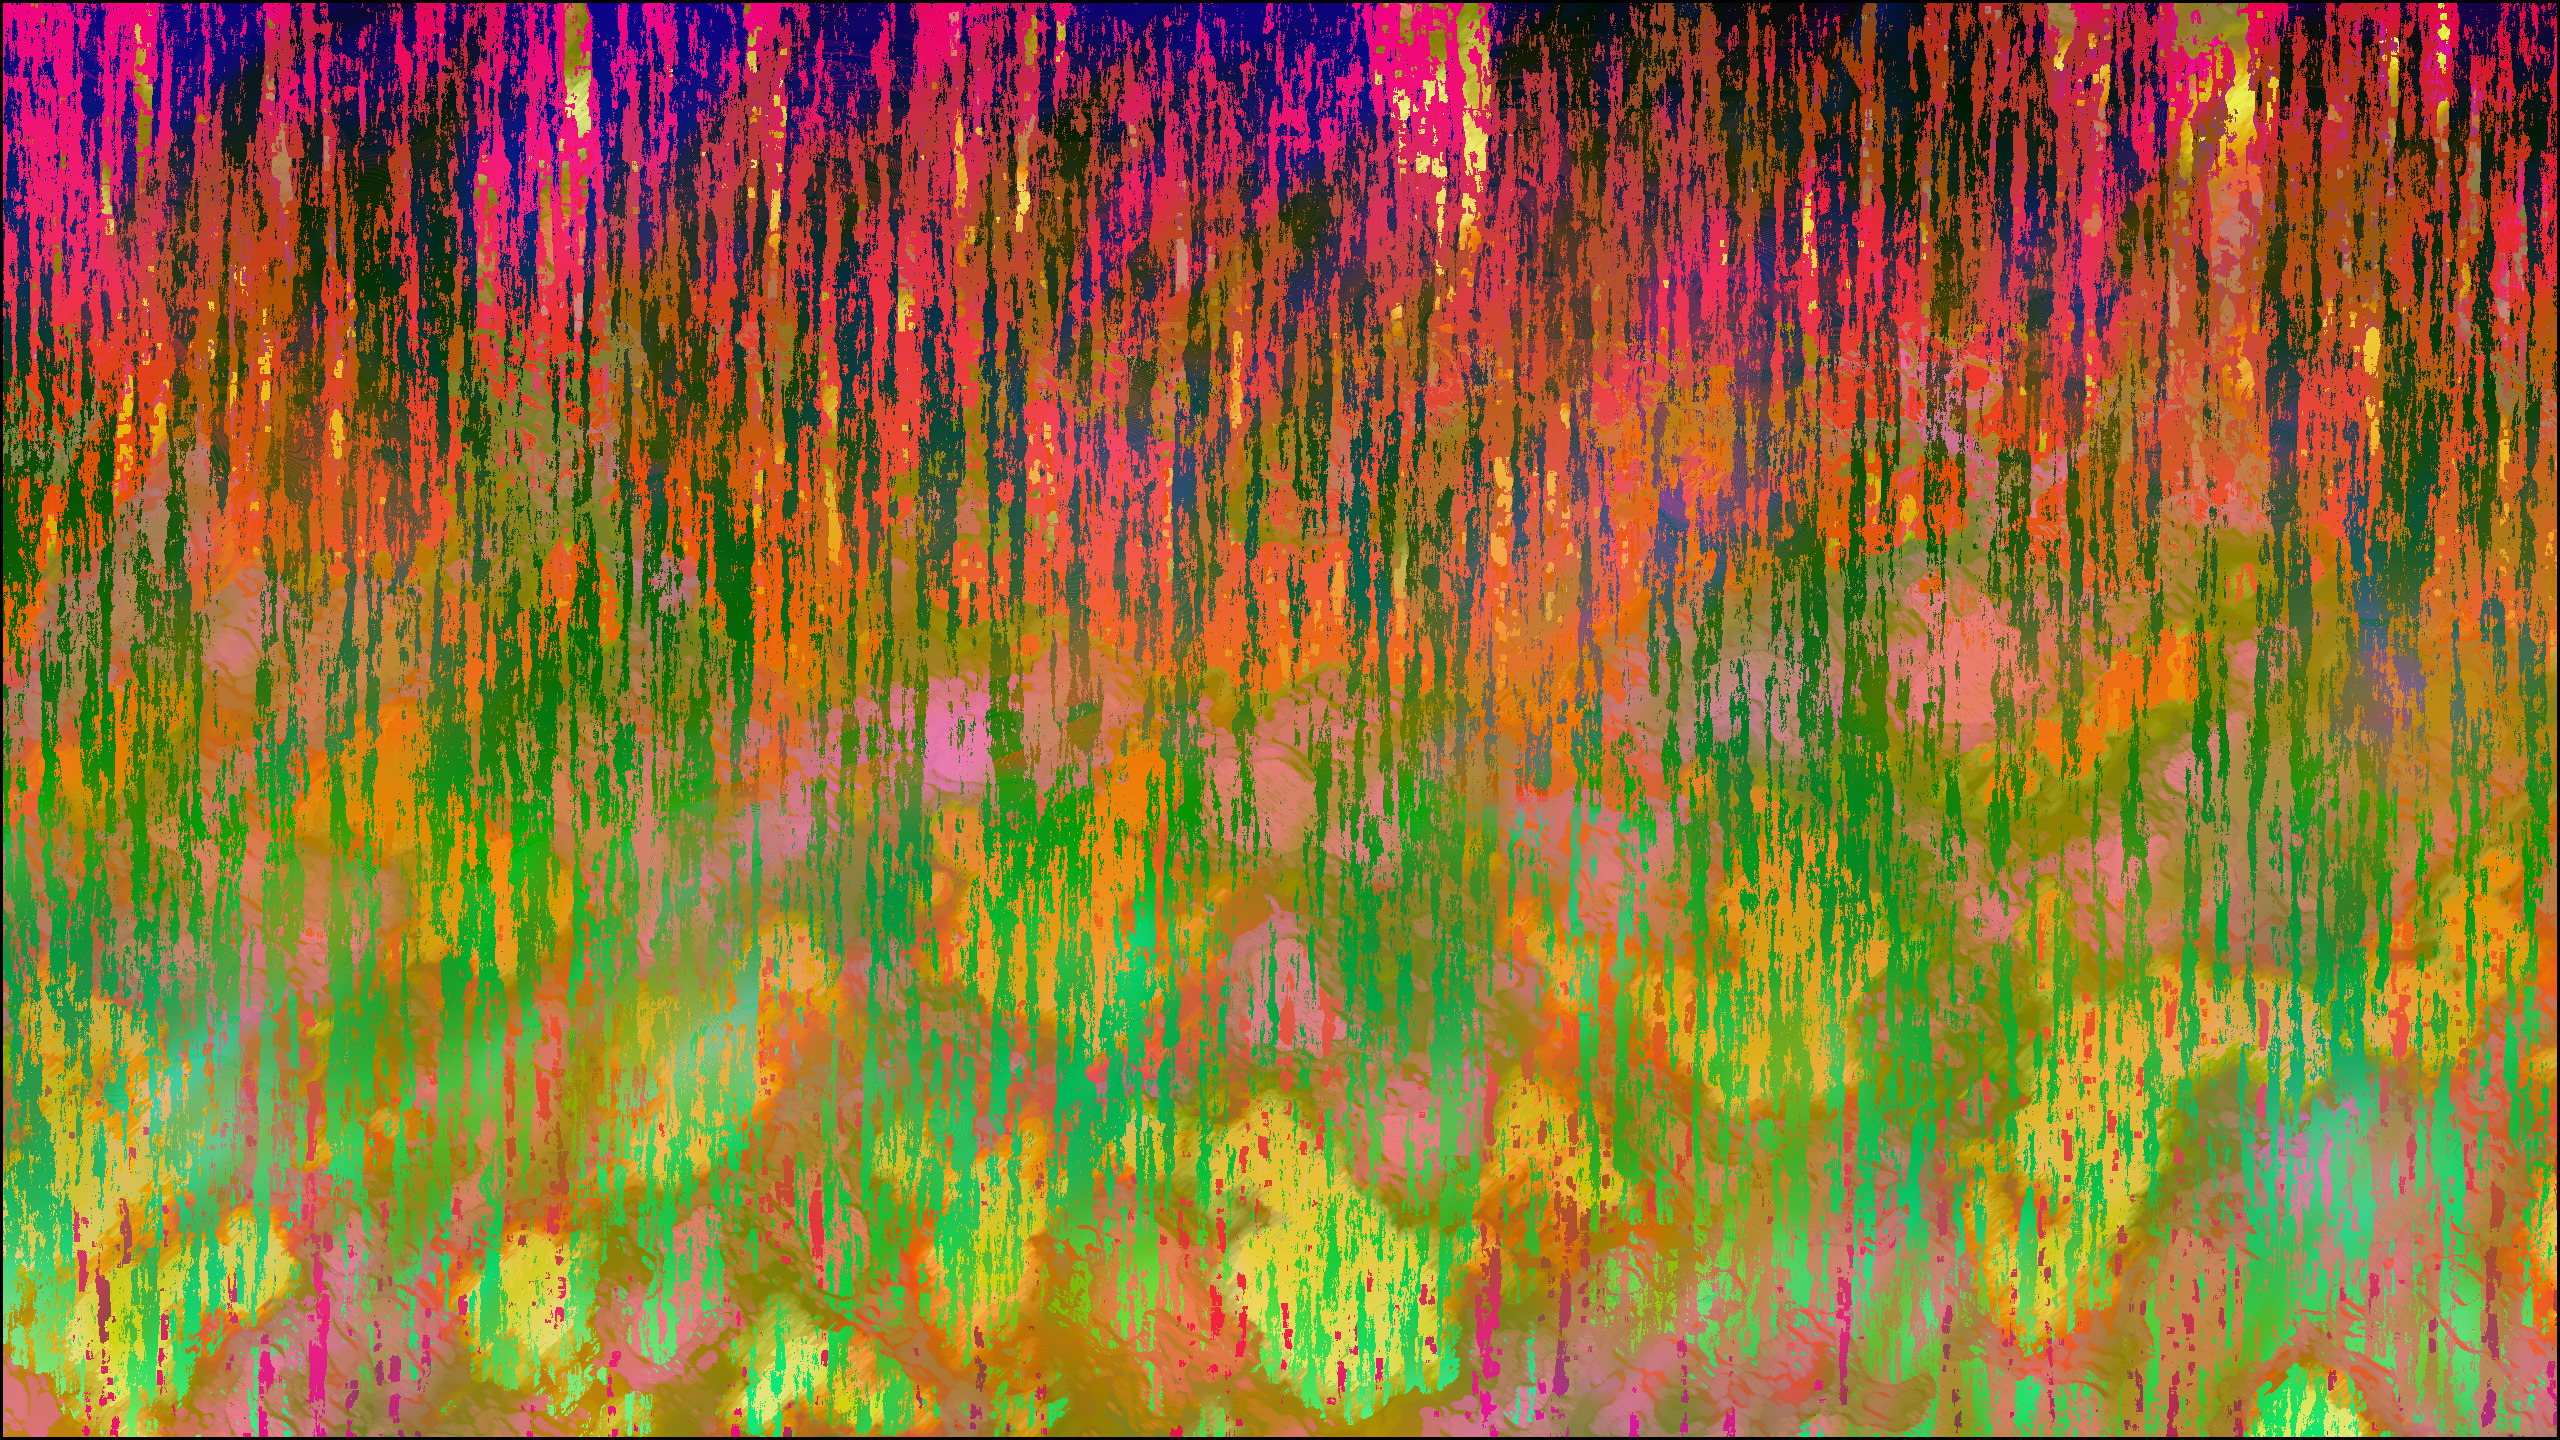 Abstract Trippy Lsd Bright Melting Wallpaper And Background - Trip 2560 X 1440 , HD Wallpaper & Backgrounds